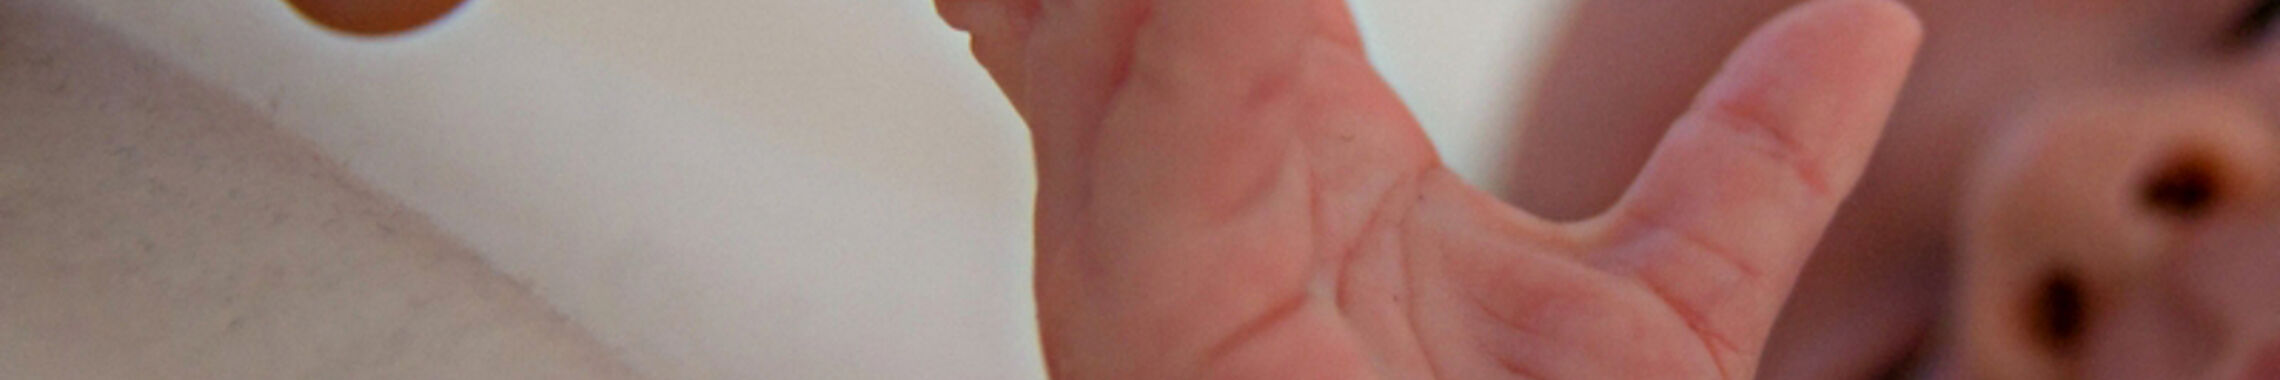 Ein Neugeborenes wird sanft an den Fingern berührt.